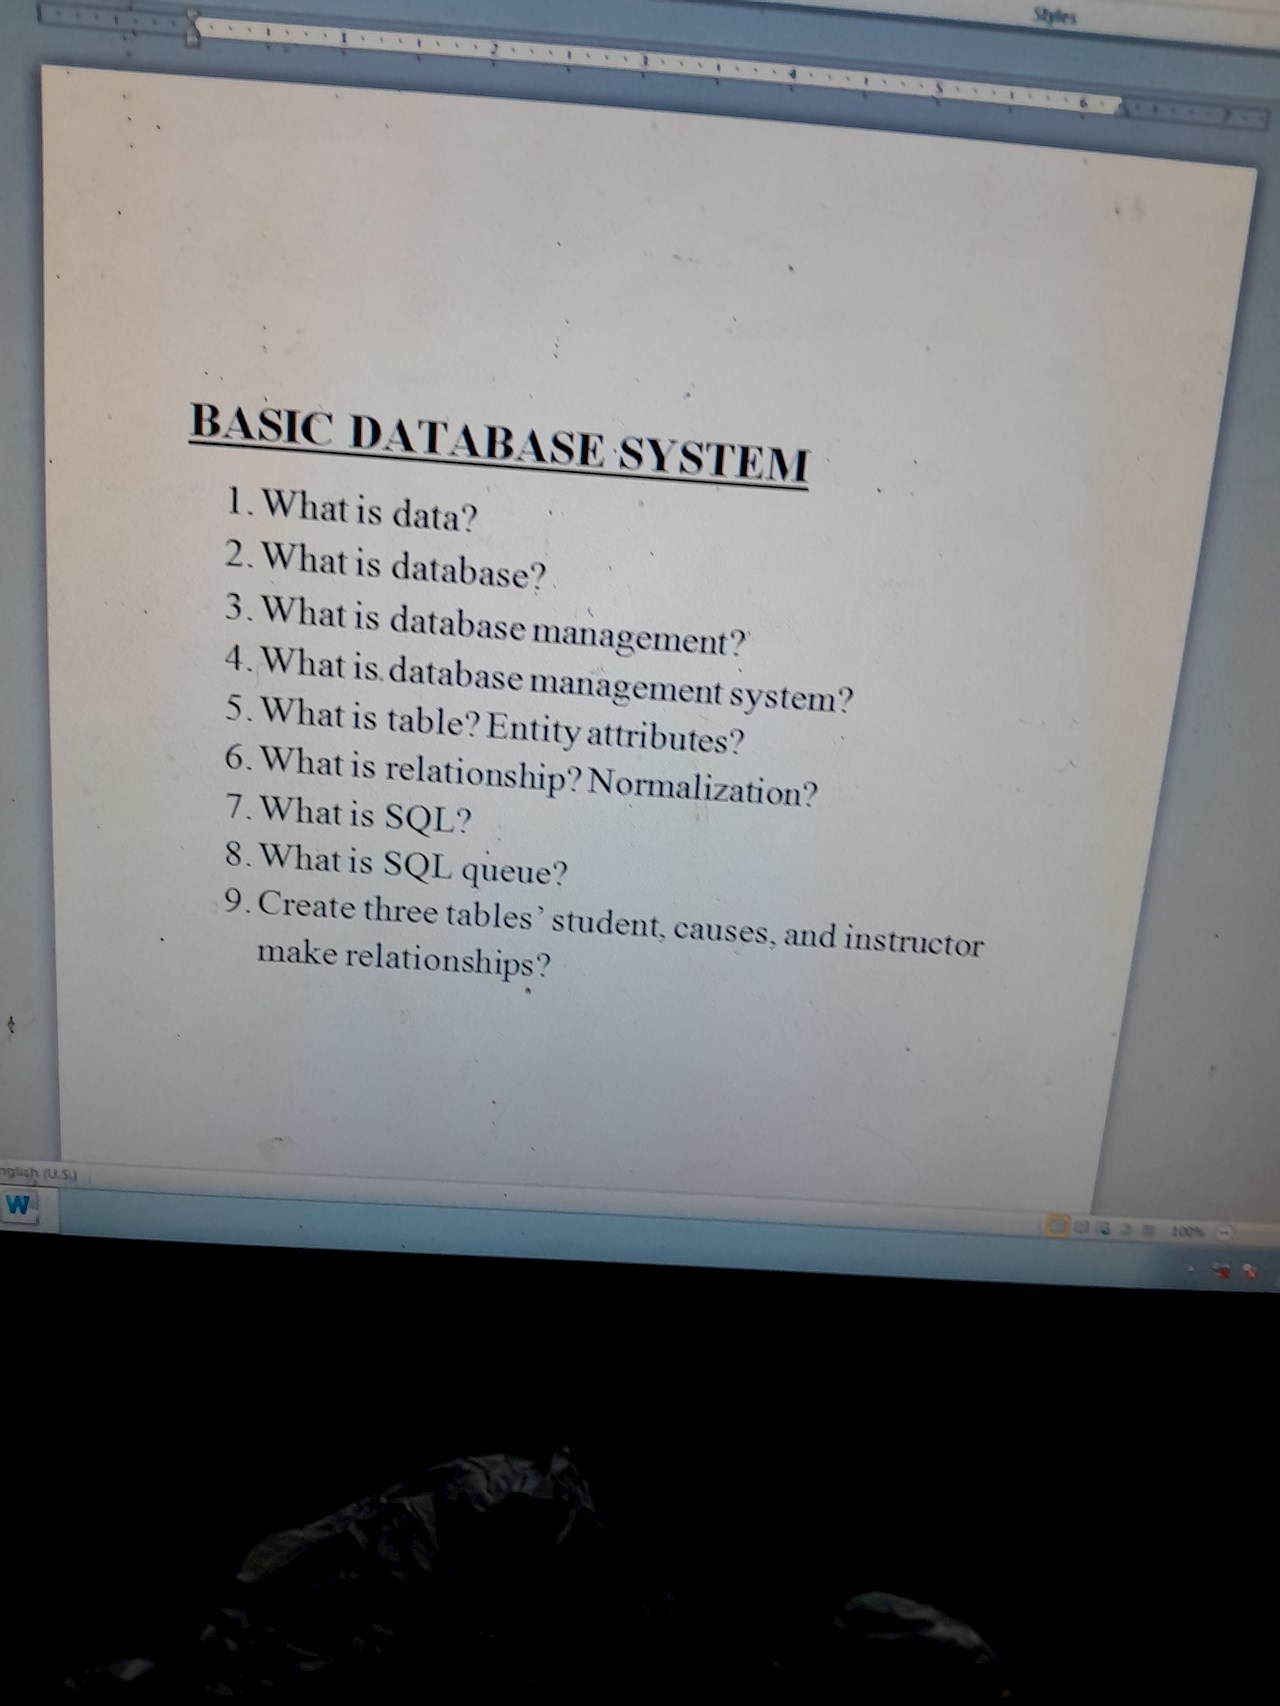 Basic Database system?